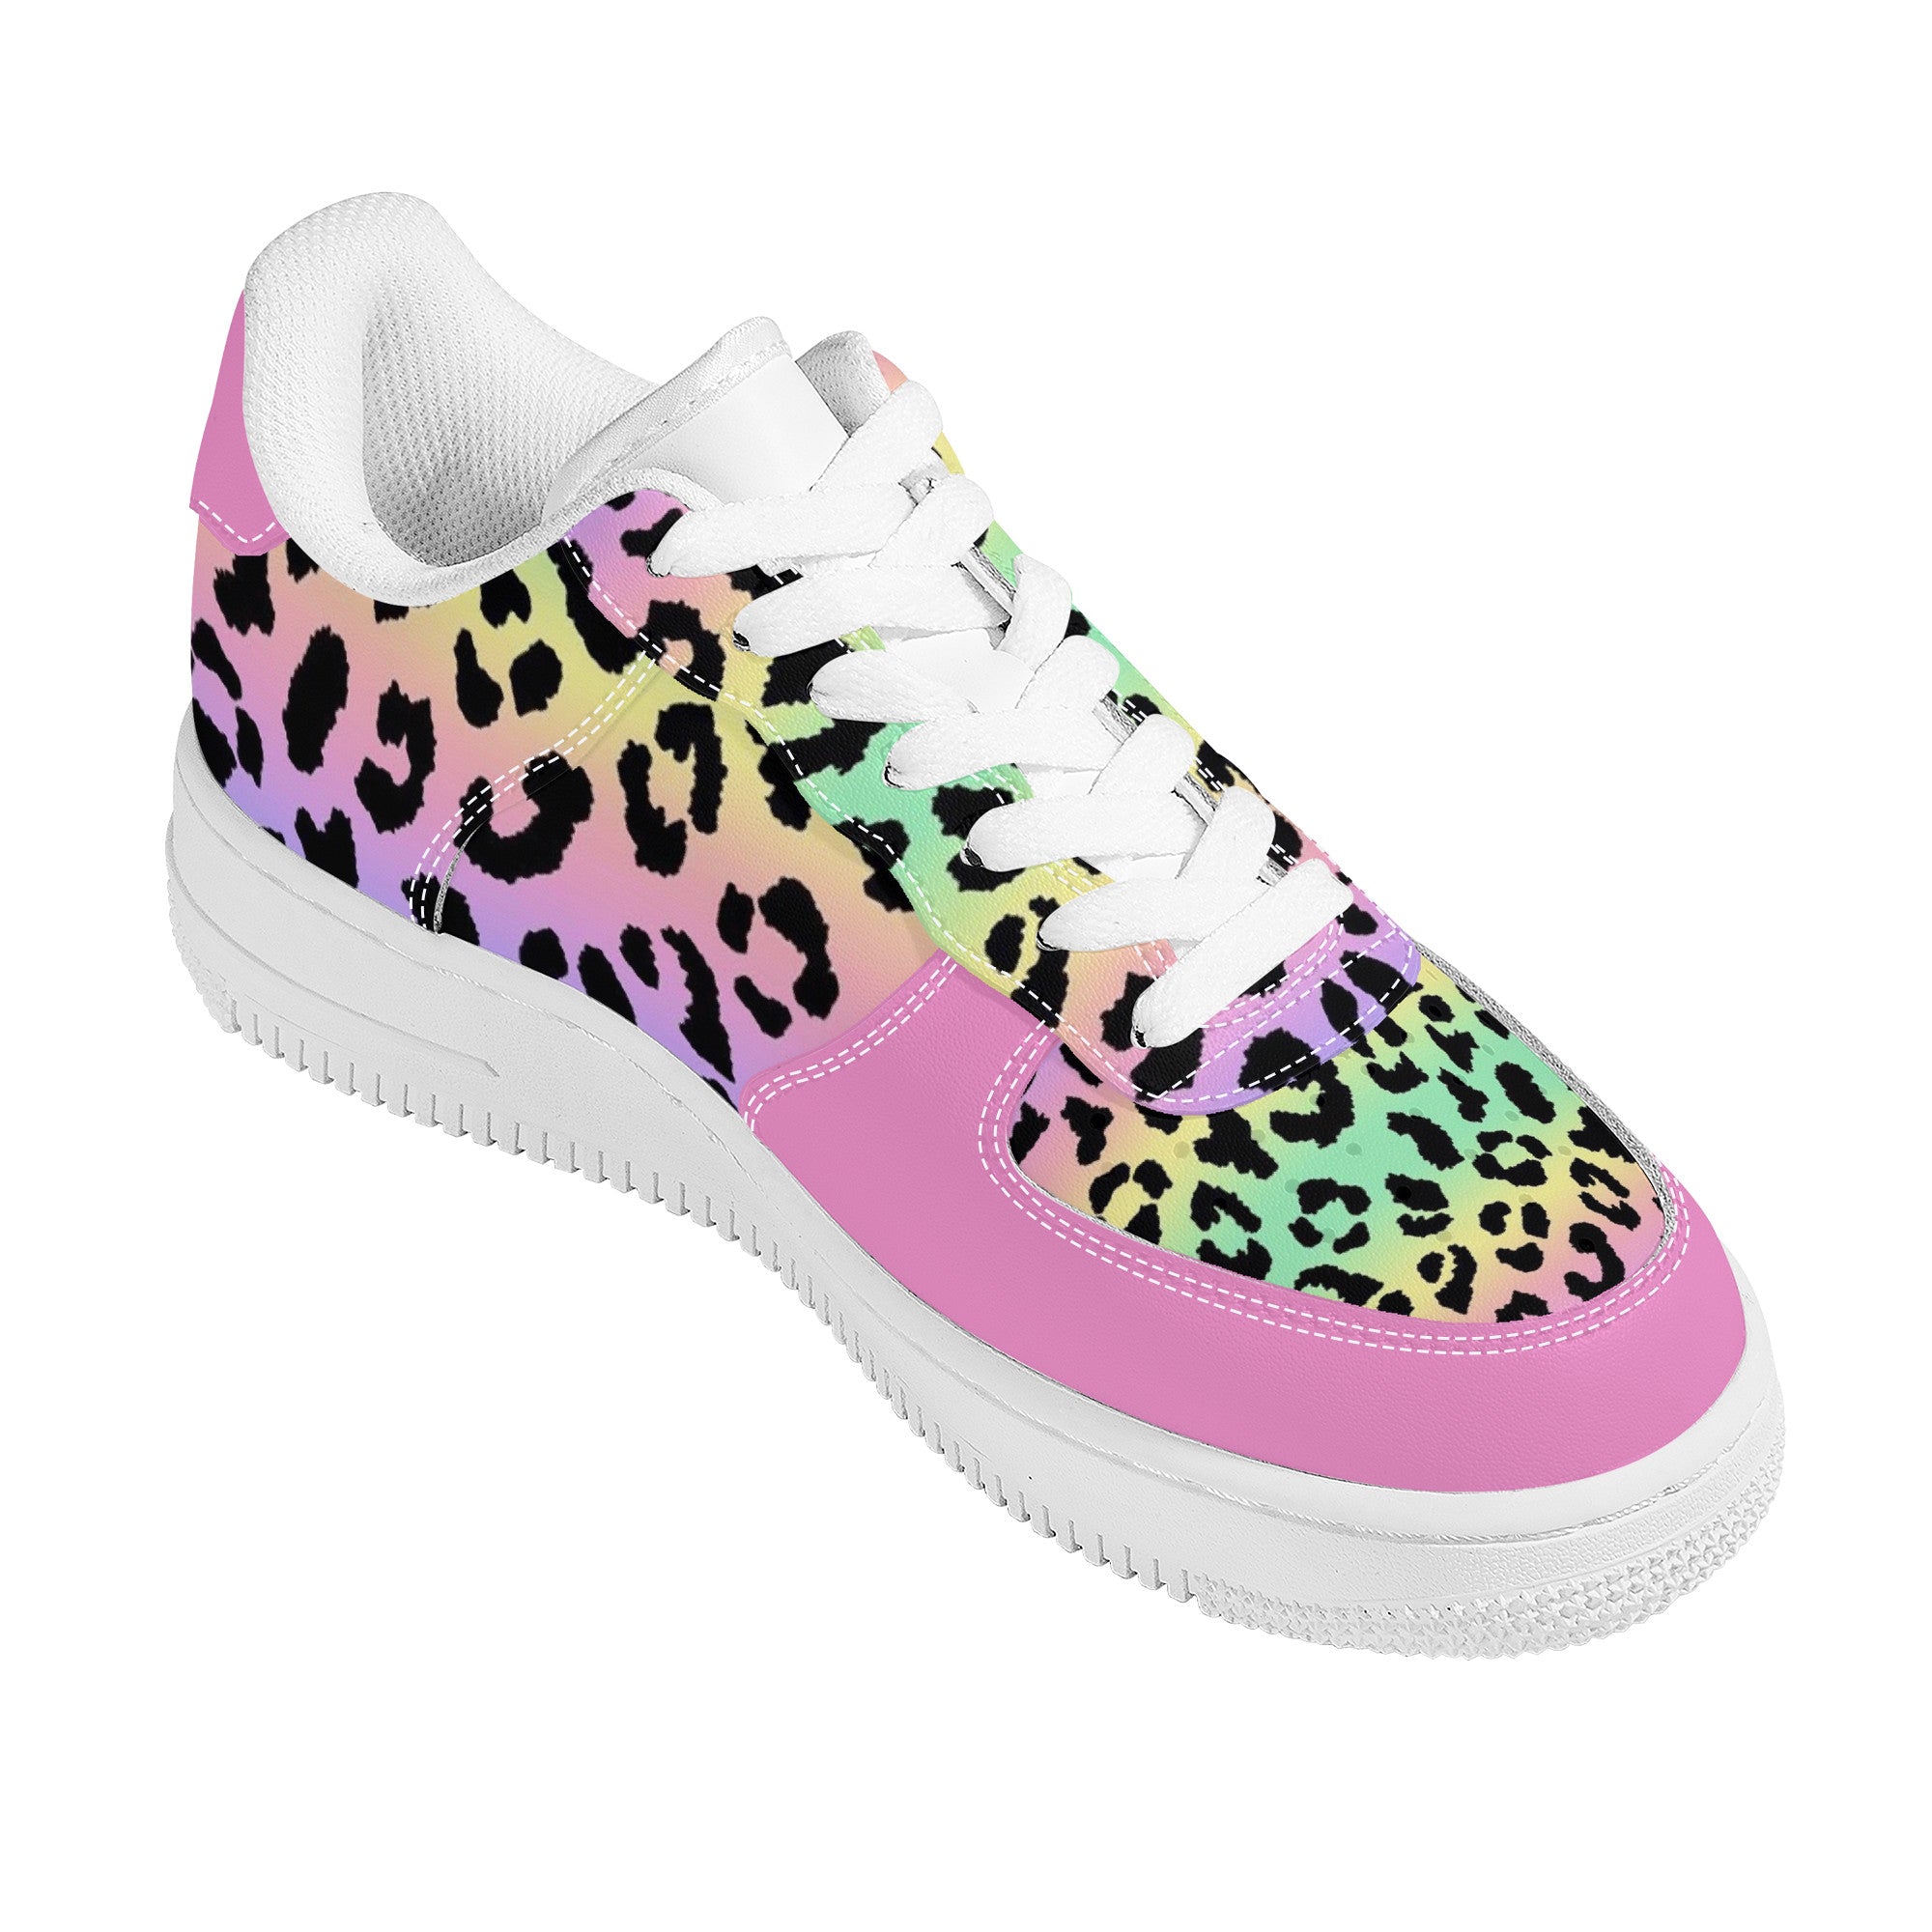 High Top “OG” Pink Toe Sneaker Slippers